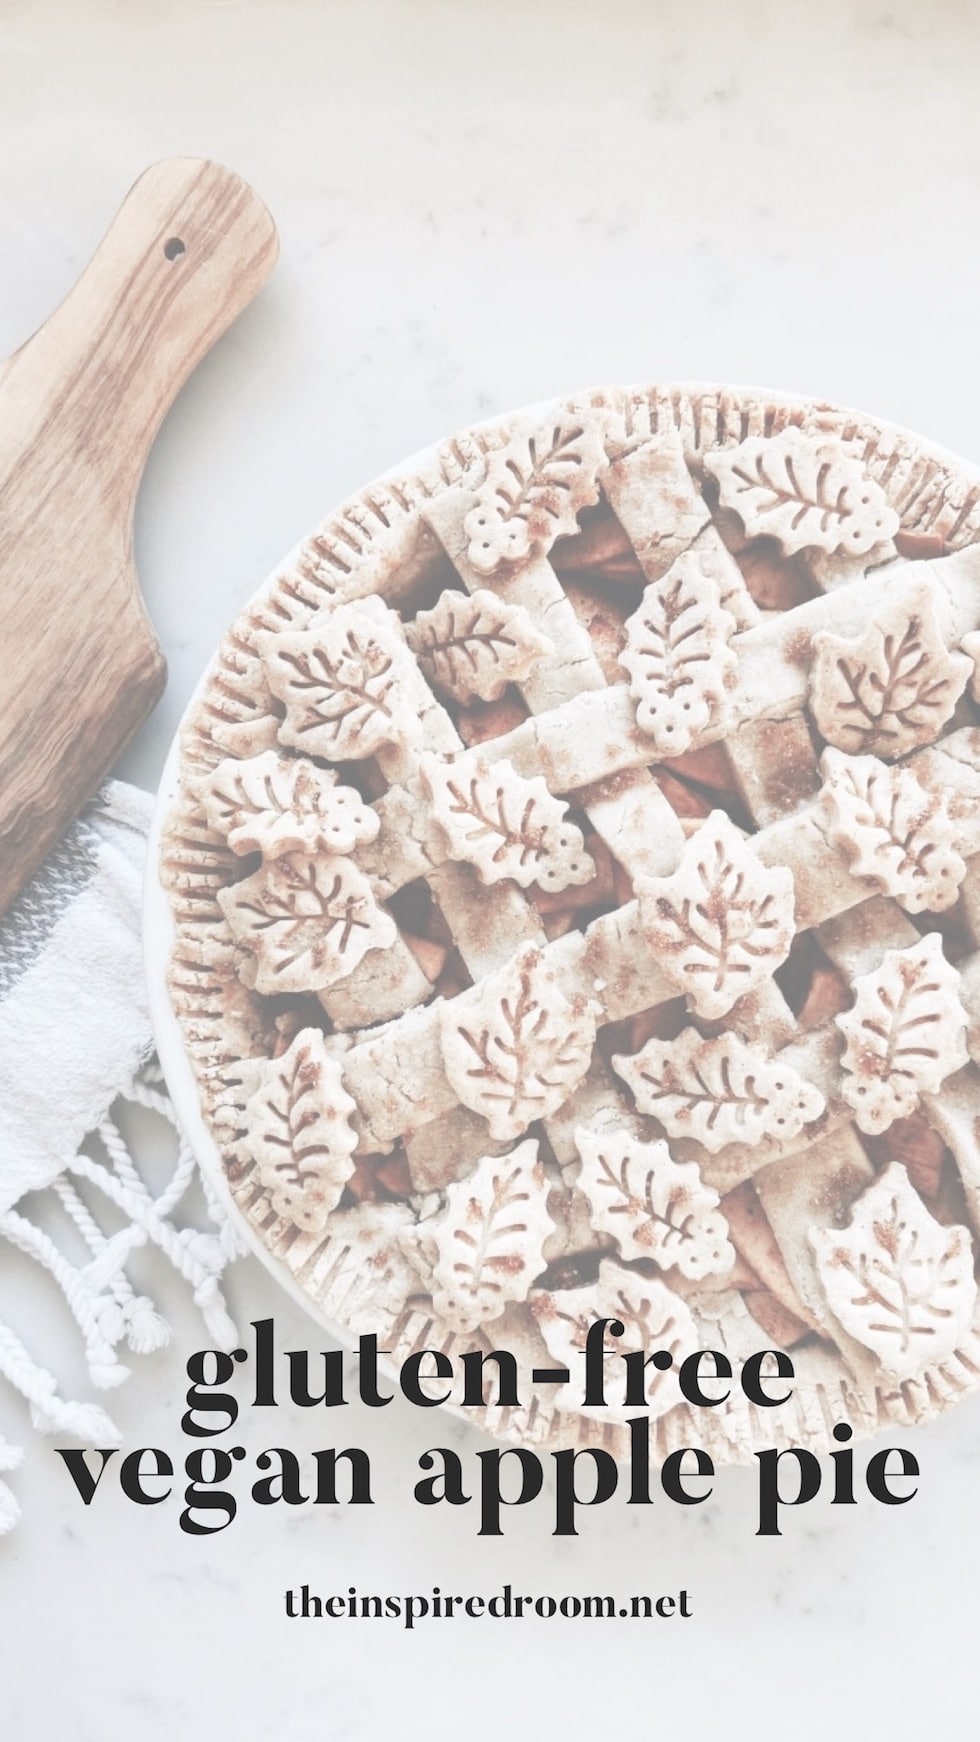 Our Gluten-Free Vegan Apple Pie